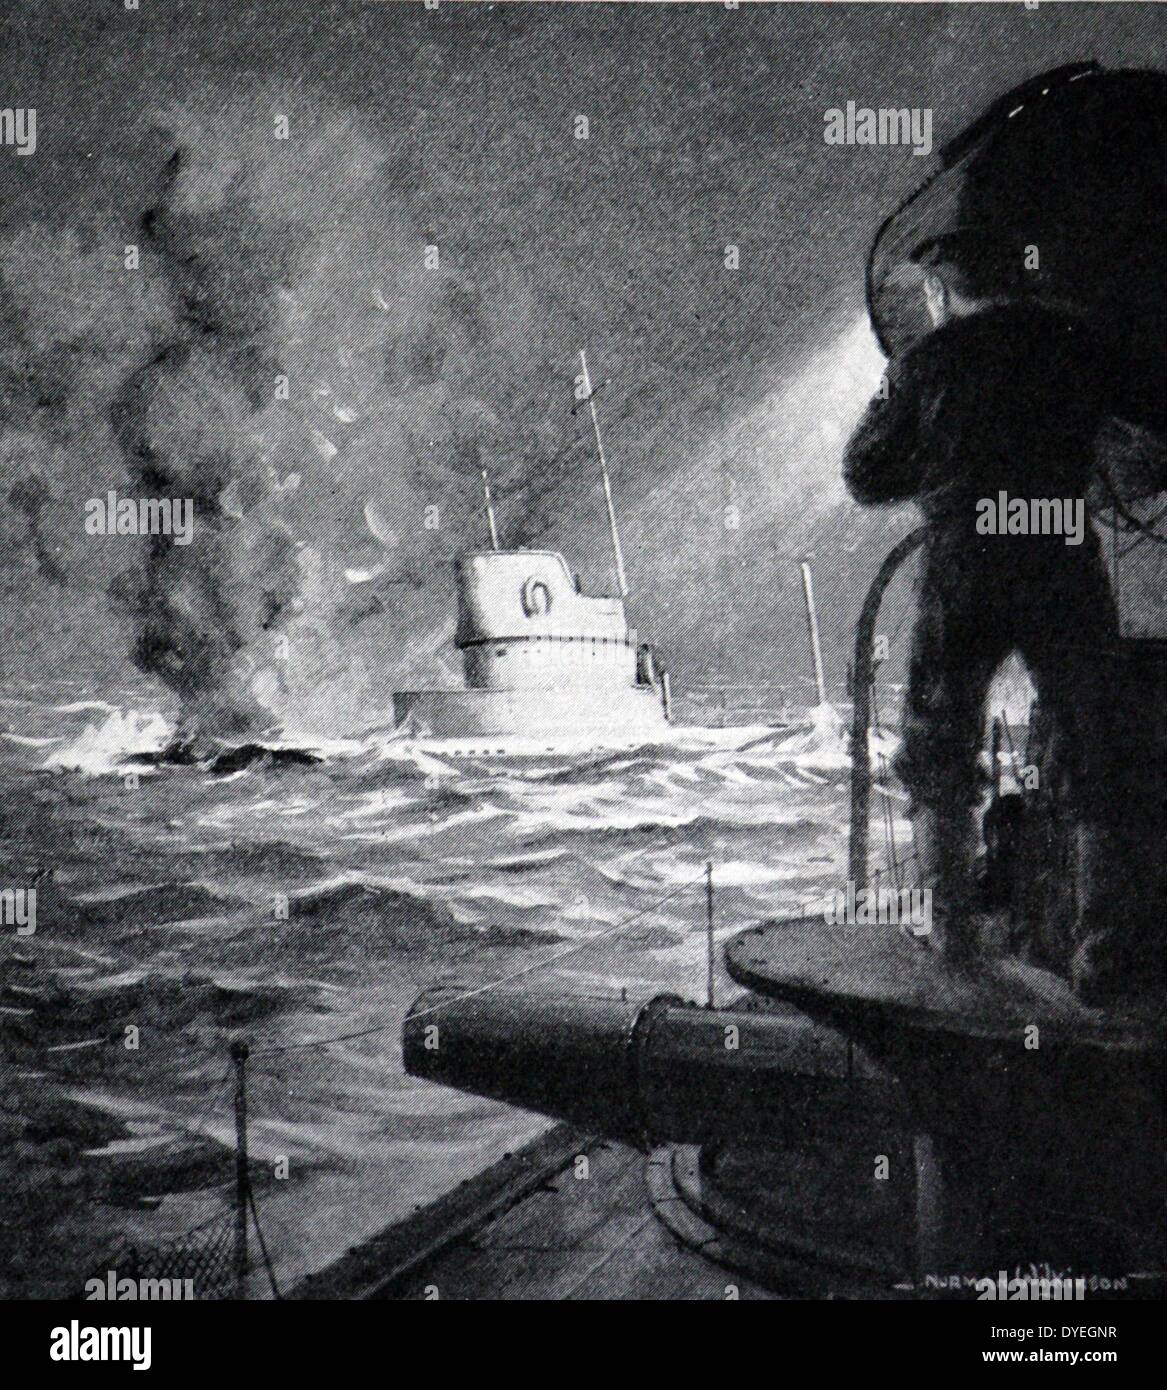 Le sous-marin allemand percutés par un destroyer britannique. Le sort ultime du sous-marin est incertaine, mais les autorités allemandes ont annoncé qu'elle ne revienne vers le port. Octobre 24th, 1914. Banque D'Images